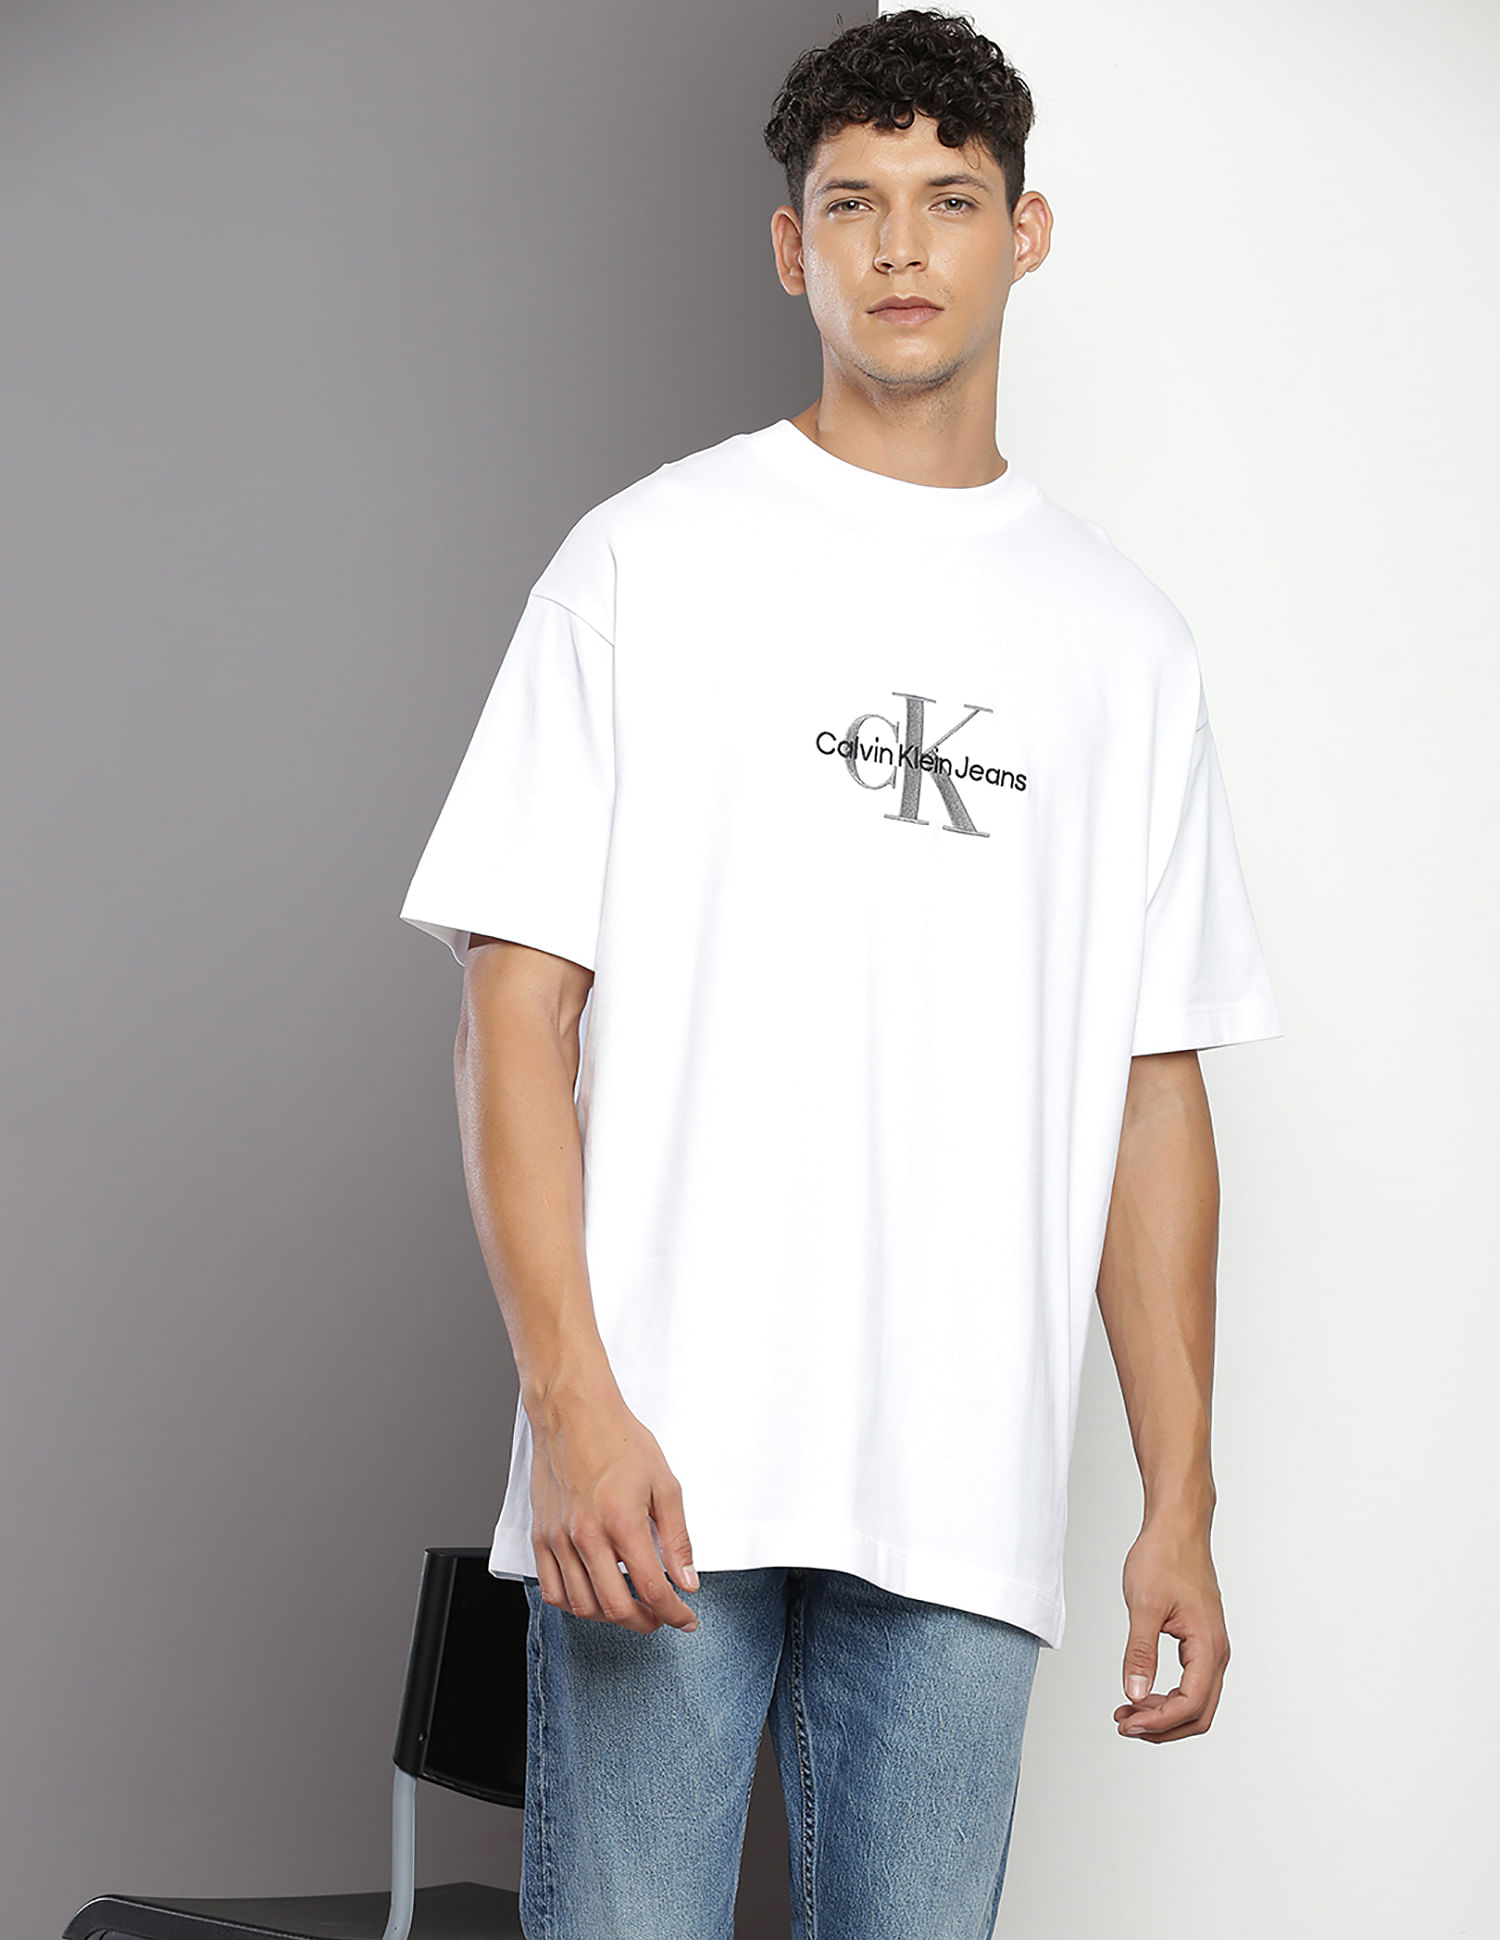 Archival Oversized Calvin Buy T-Shirt Logo Klein